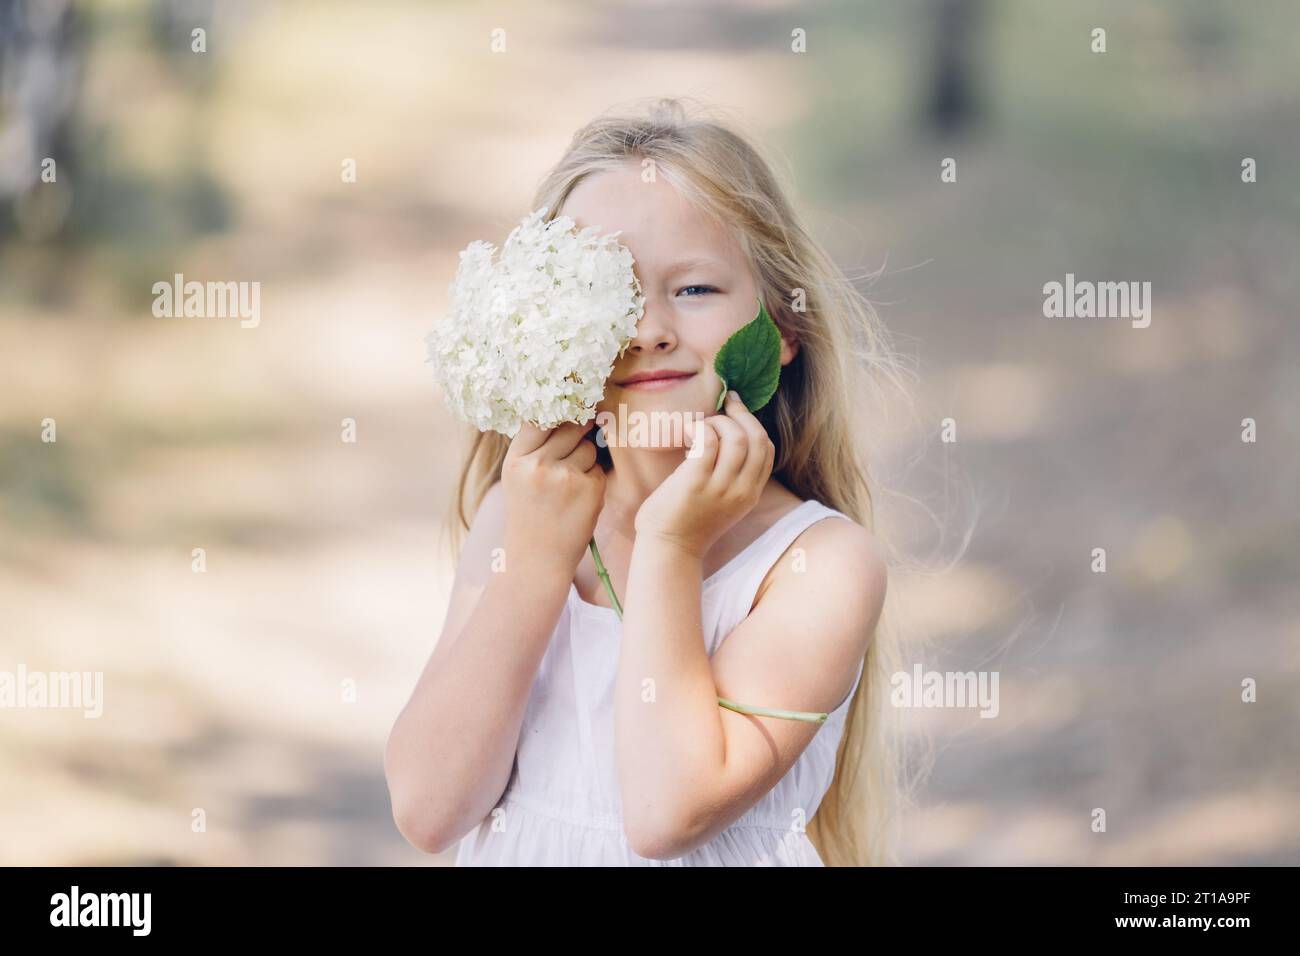 Porträt eines jungen, schönen Mädchens, das einen Teil ihres Gesichts hinter einer Hortensie und einem grünen Blatt versteckt, lächelnd. Horizontaler Rahmen. Stockfoto